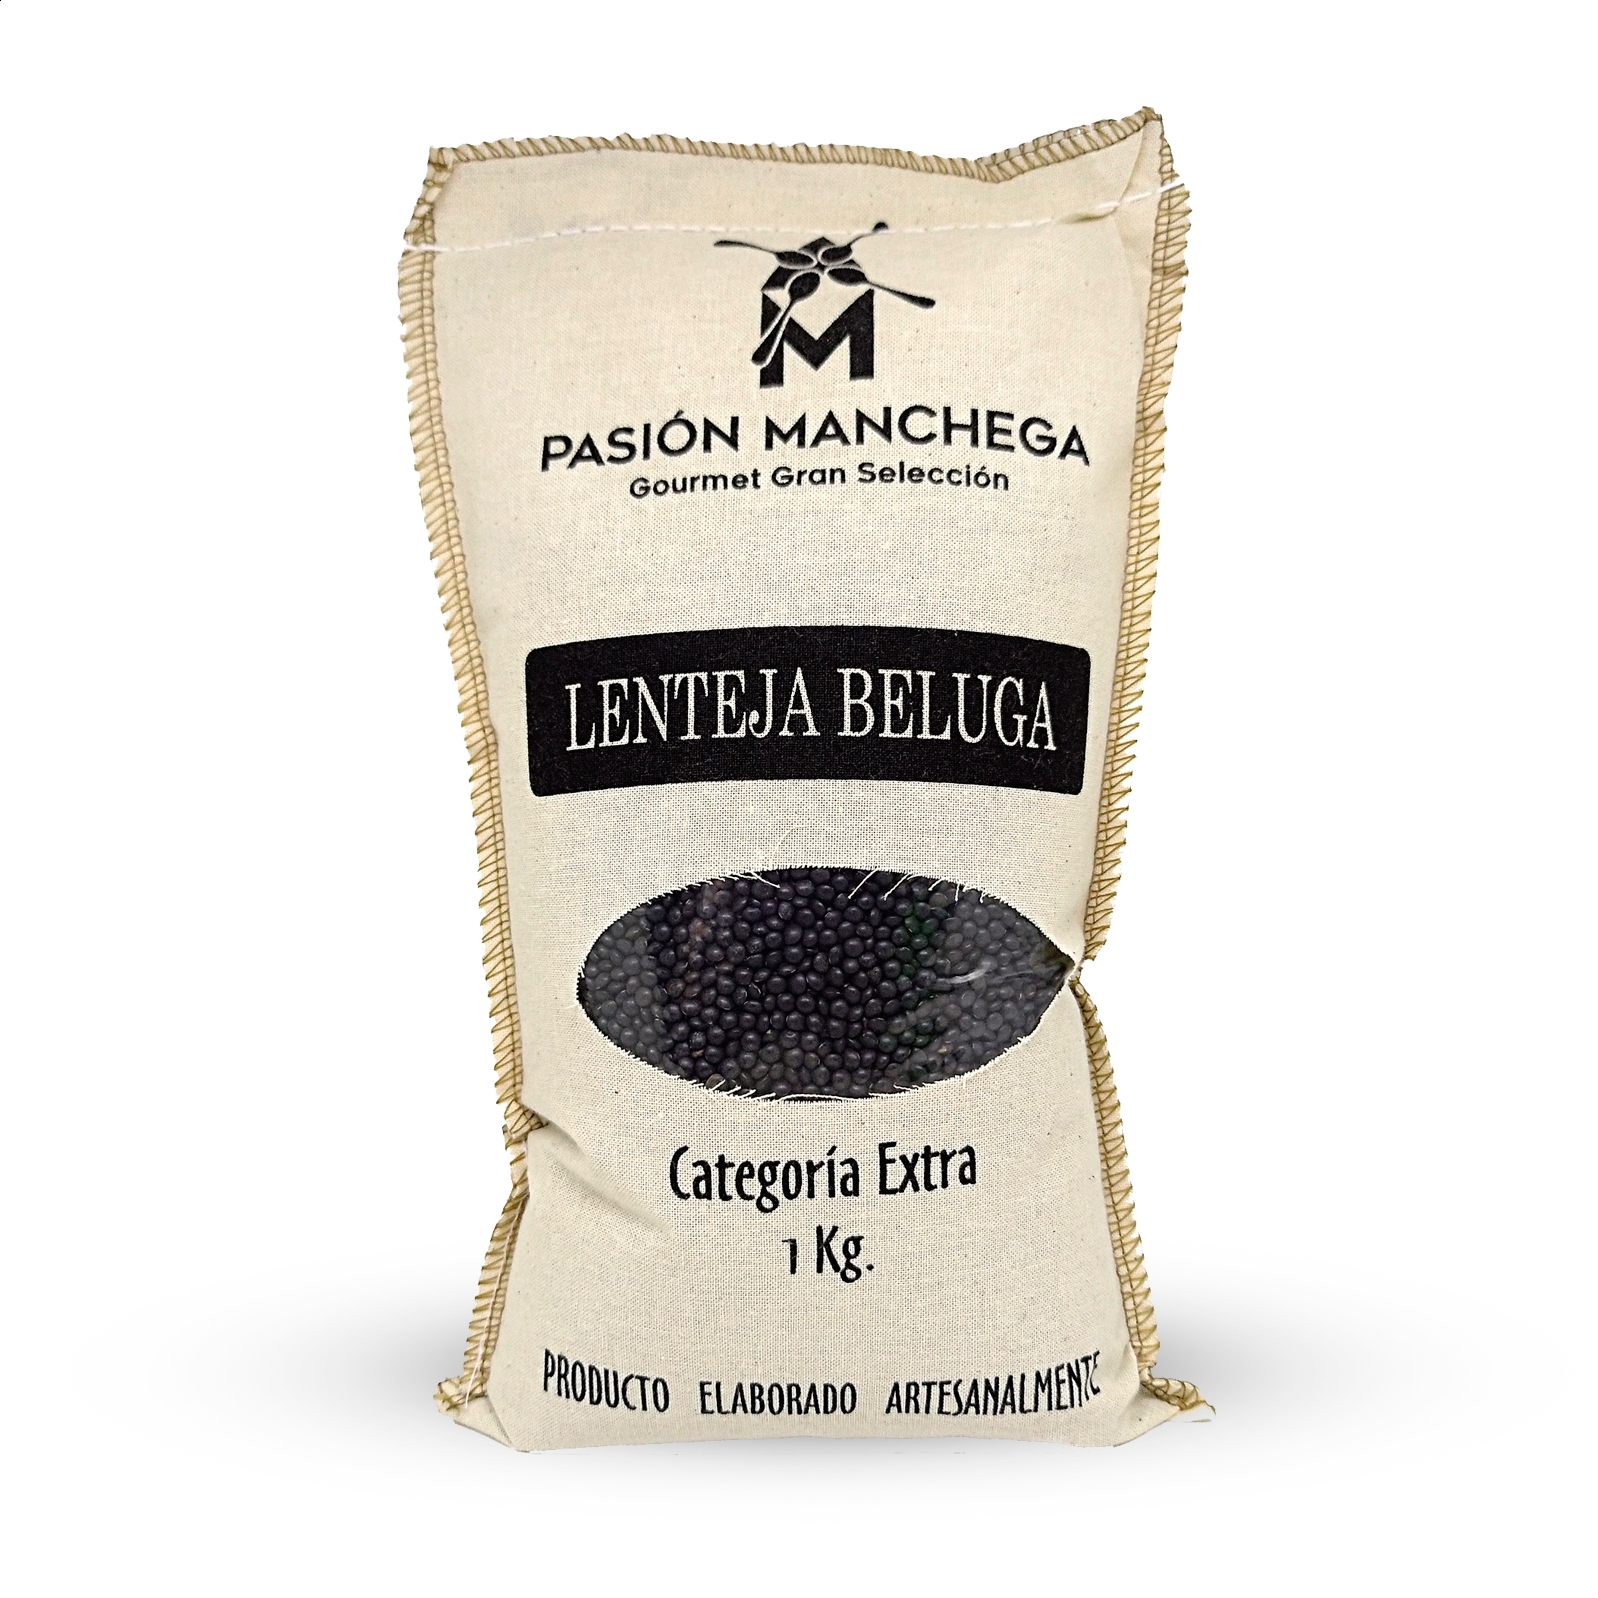 Pasión Manchega - Lote de legumbres belugas, pedrosillanas y pintas secas 1Kg, 6uds